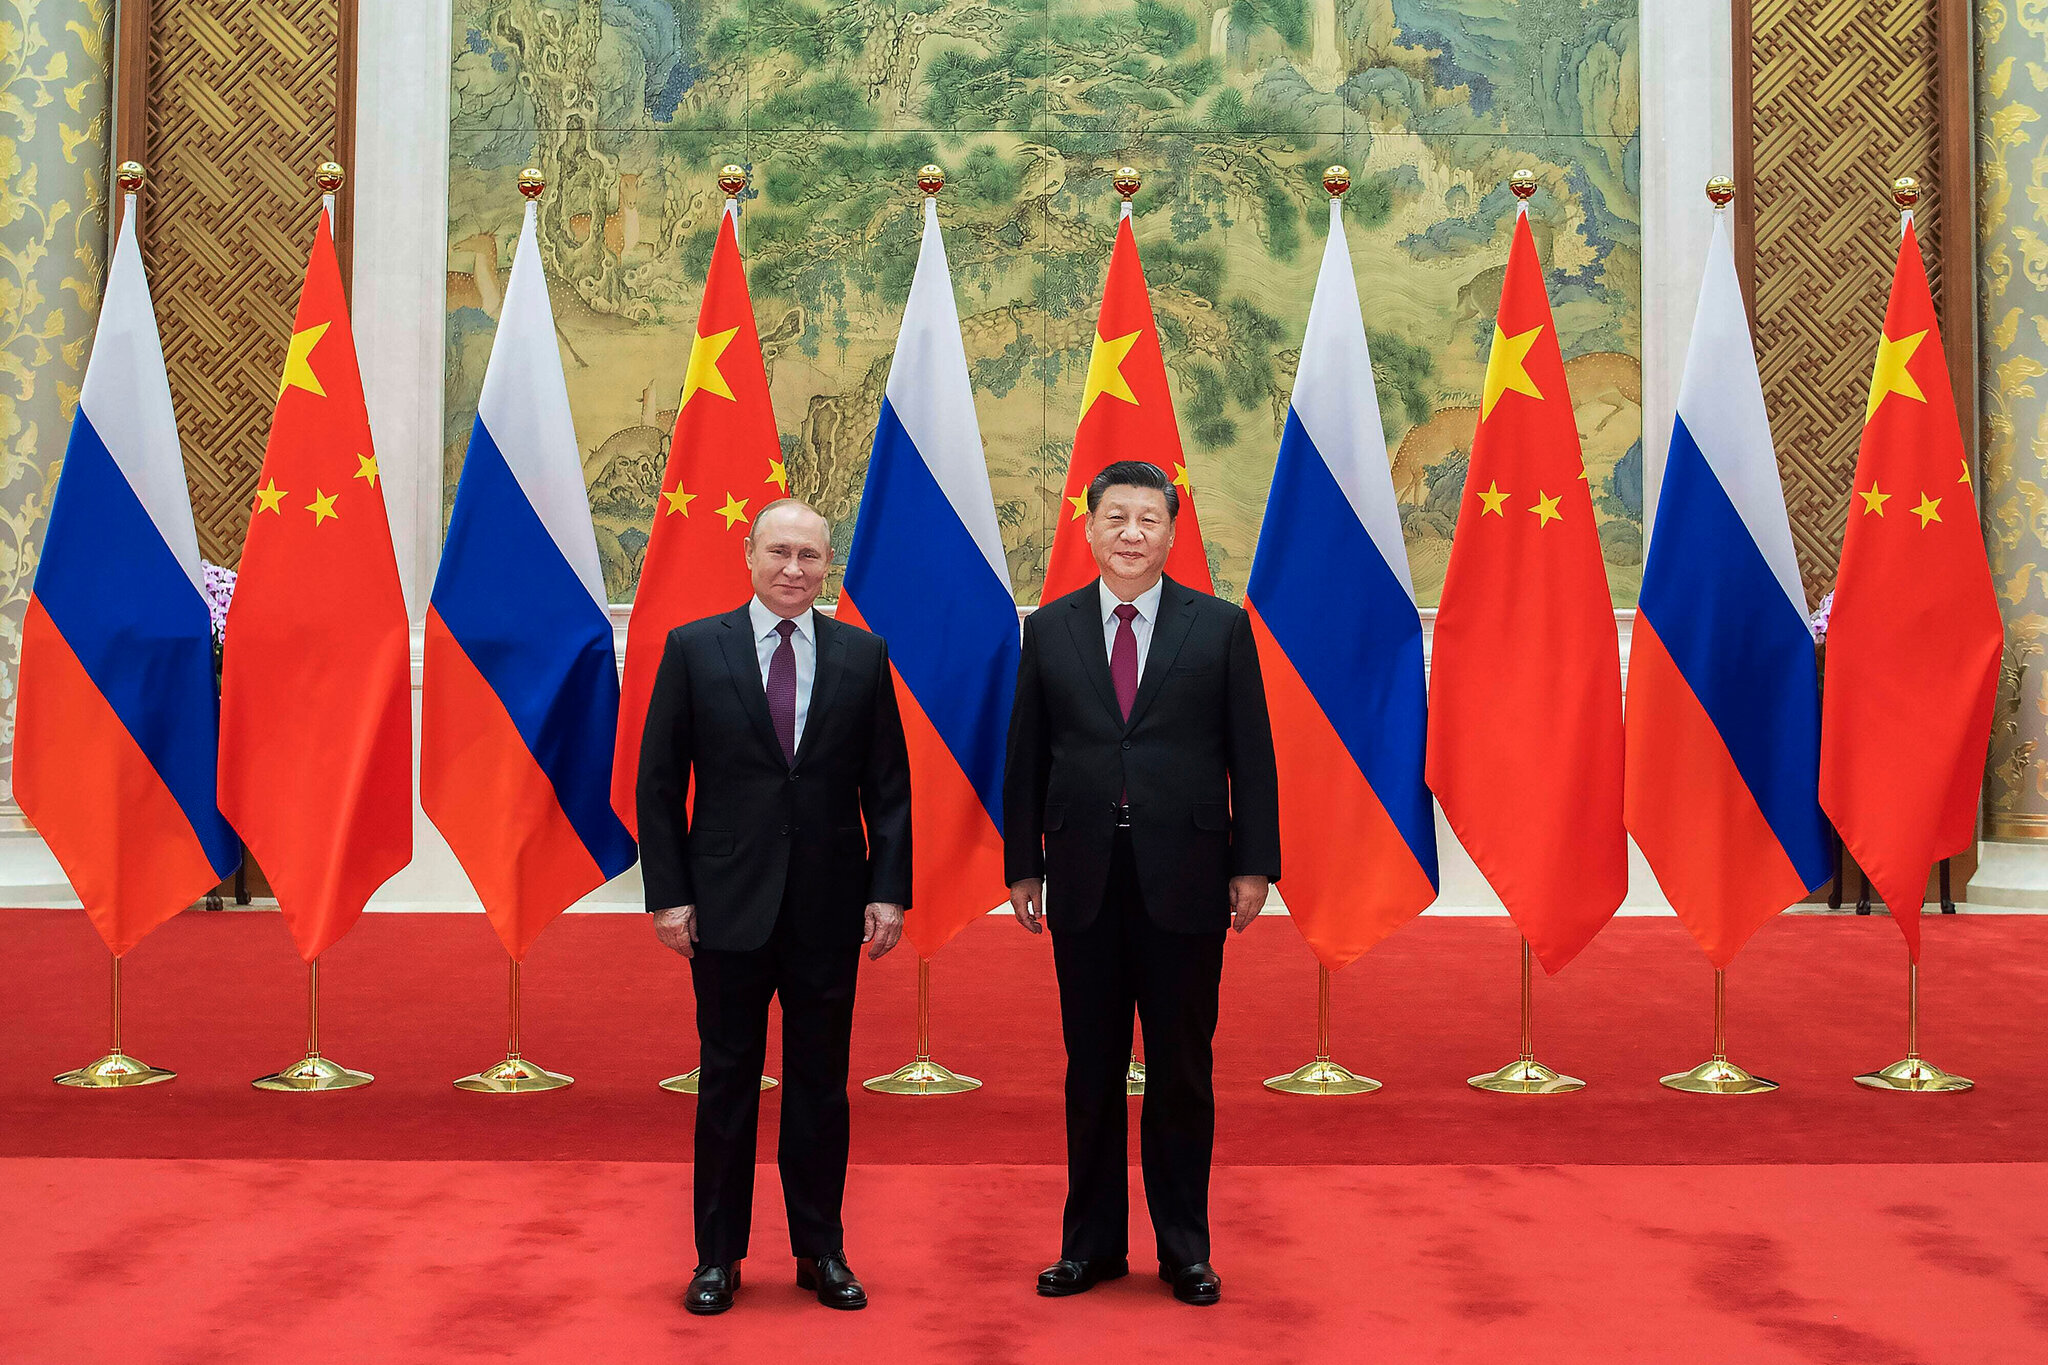 Китай может поддержать Россию, но не будет демонстративно нарушать санкции - эксперты